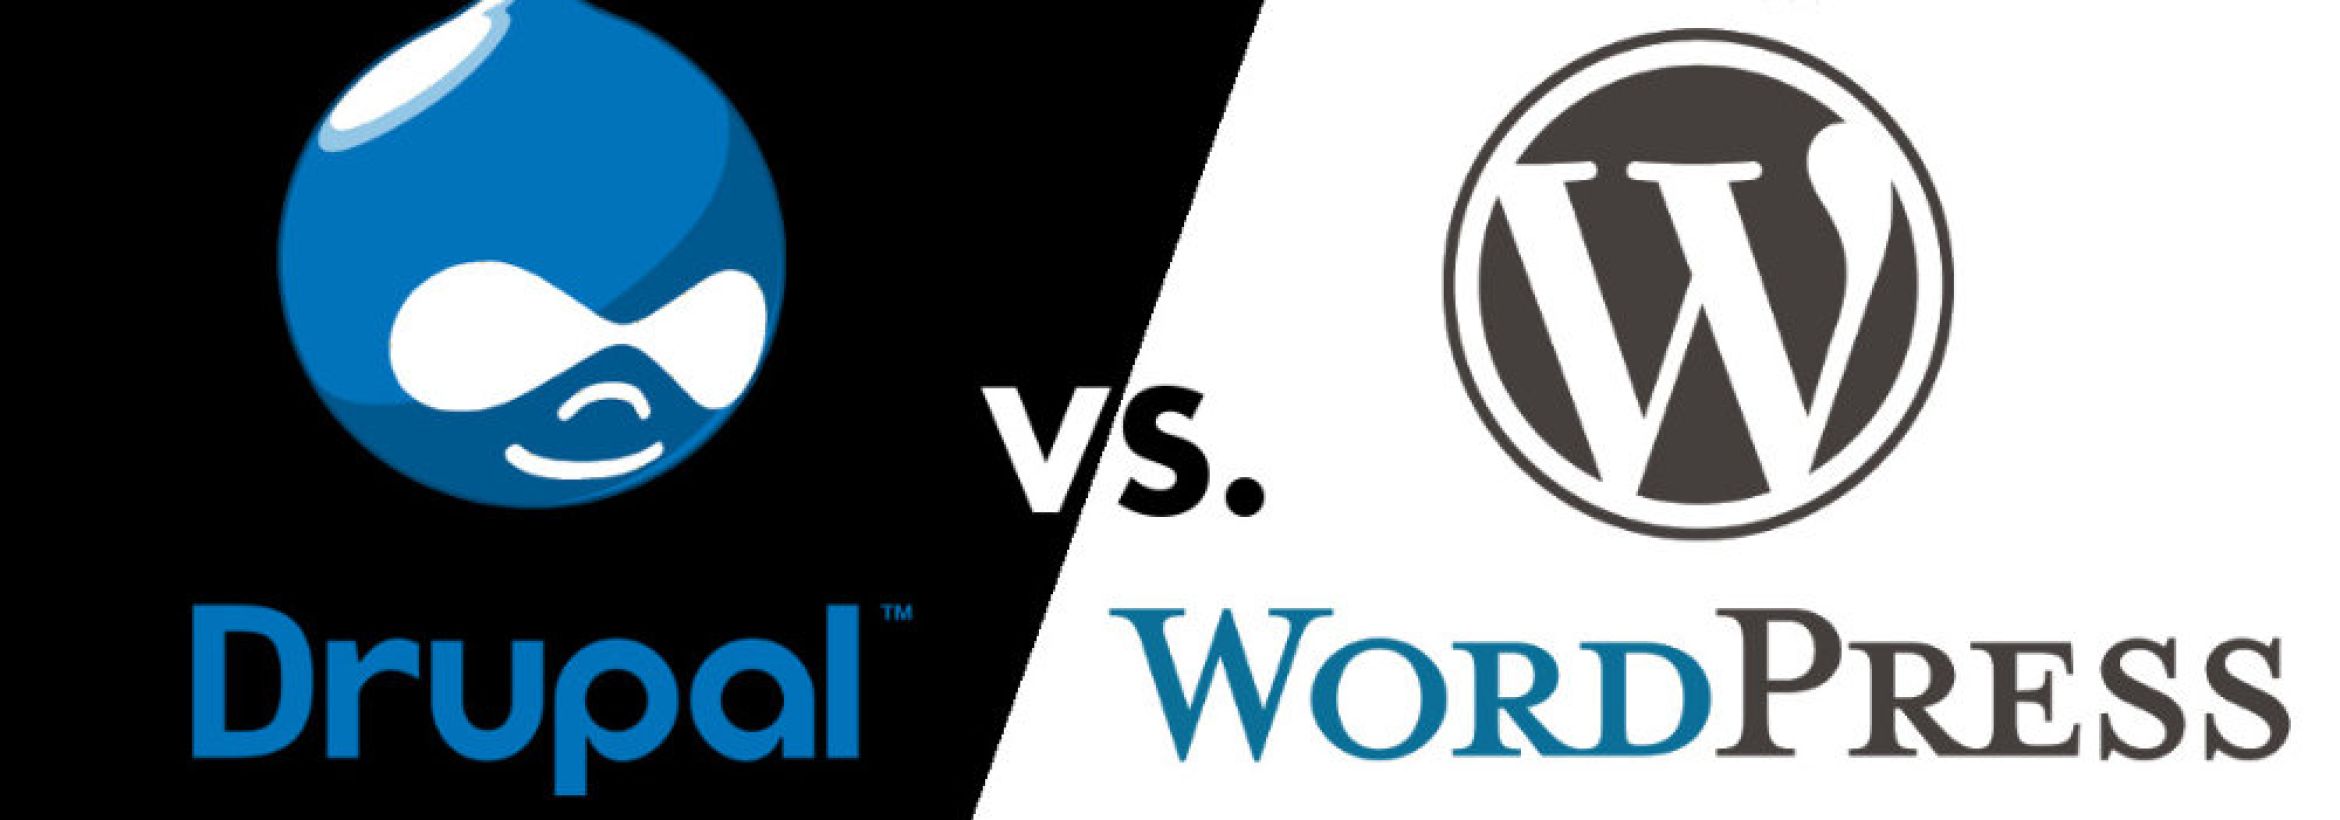 Drupal ili Wordpress?